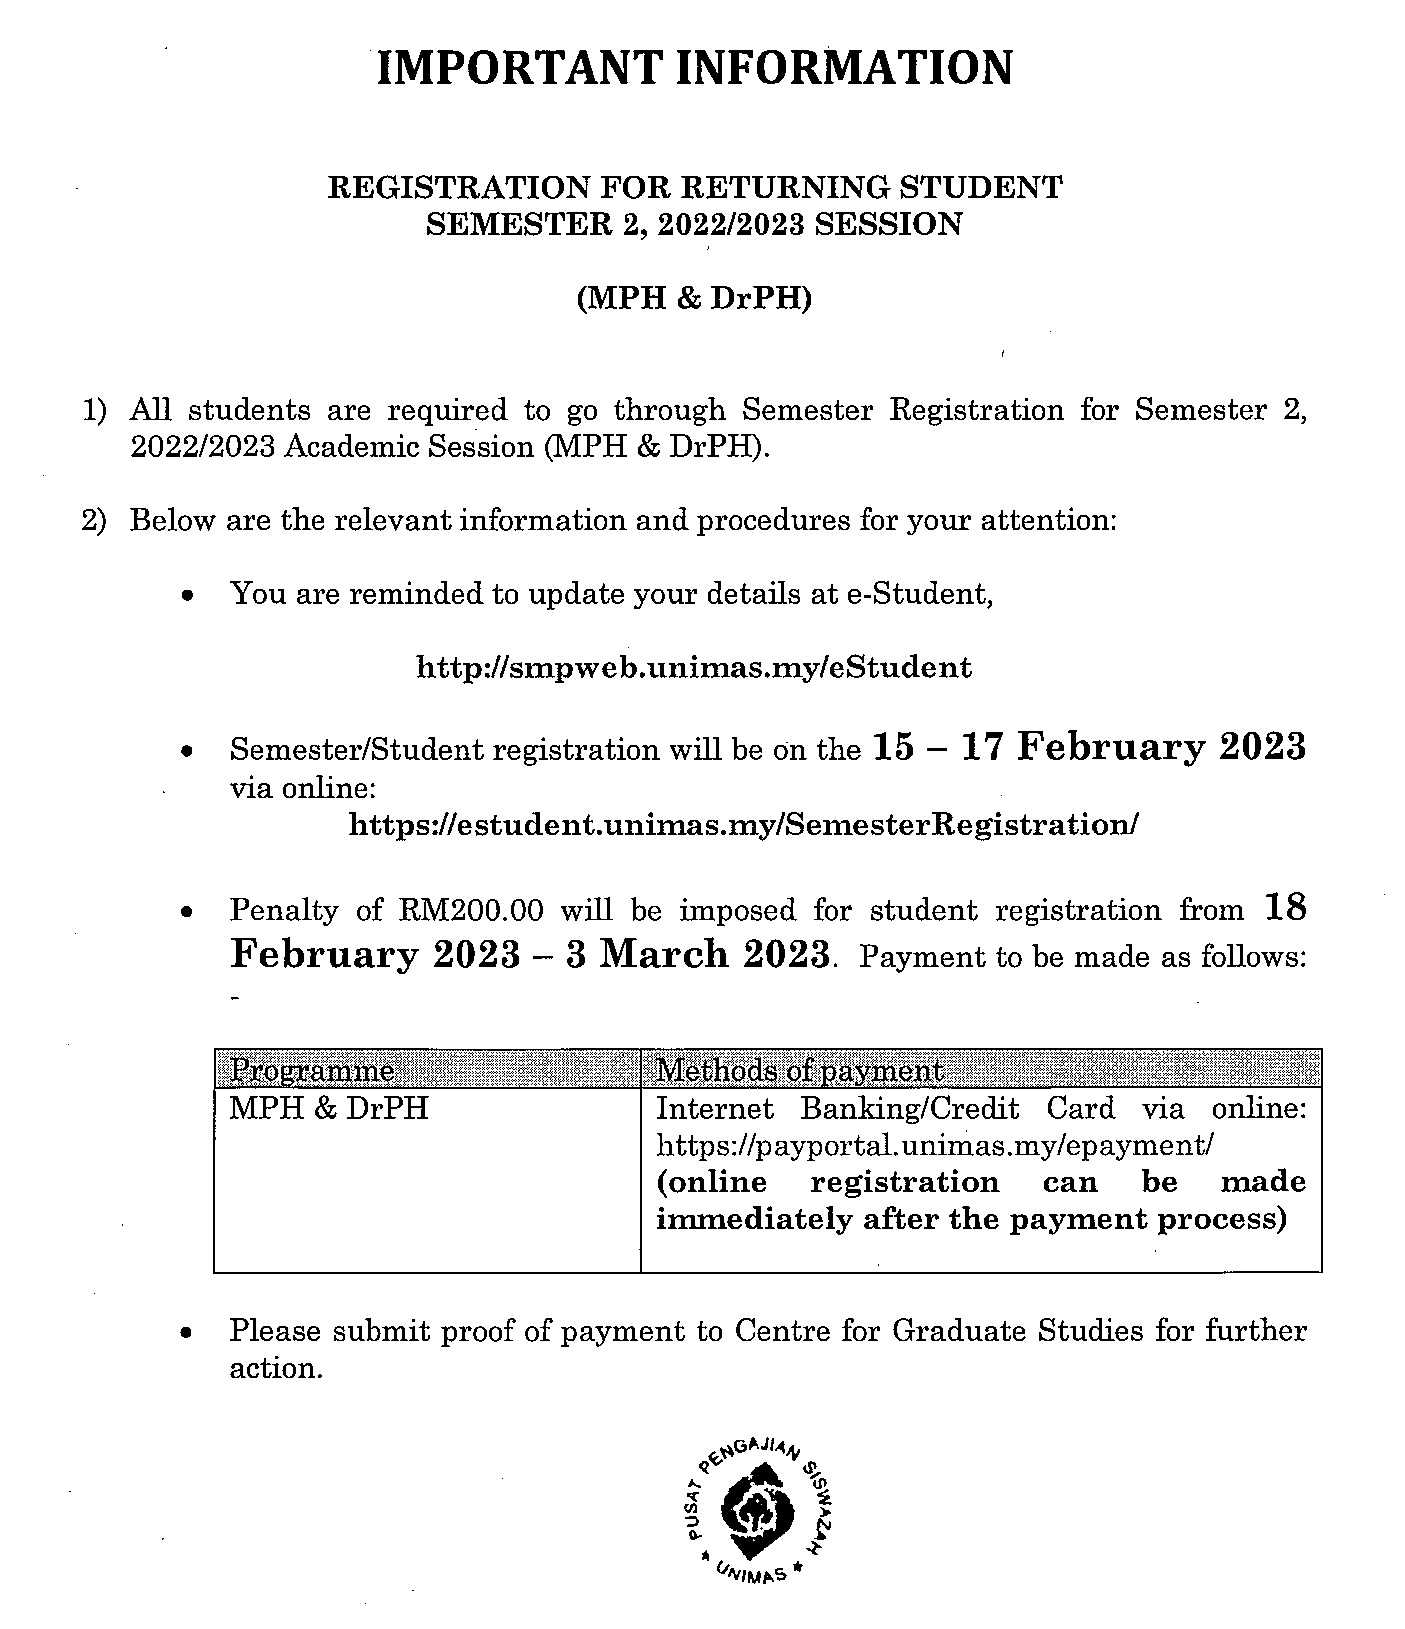 notis registration for returning student Sem 2 2022 2023 (mph drph).jpg